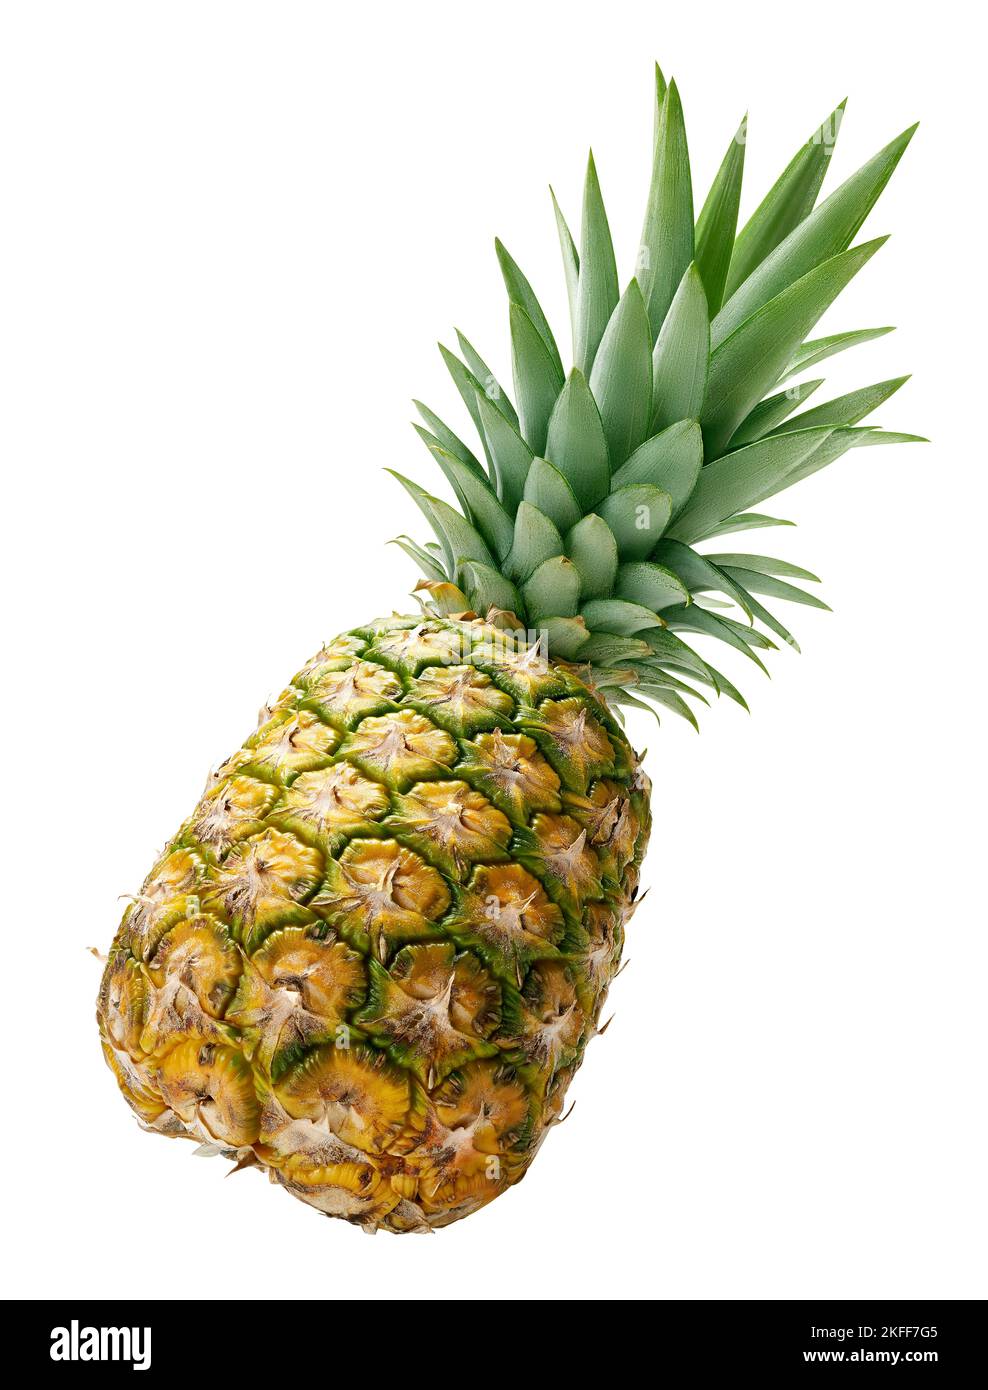 Flying pineapple fruit Stock Photo